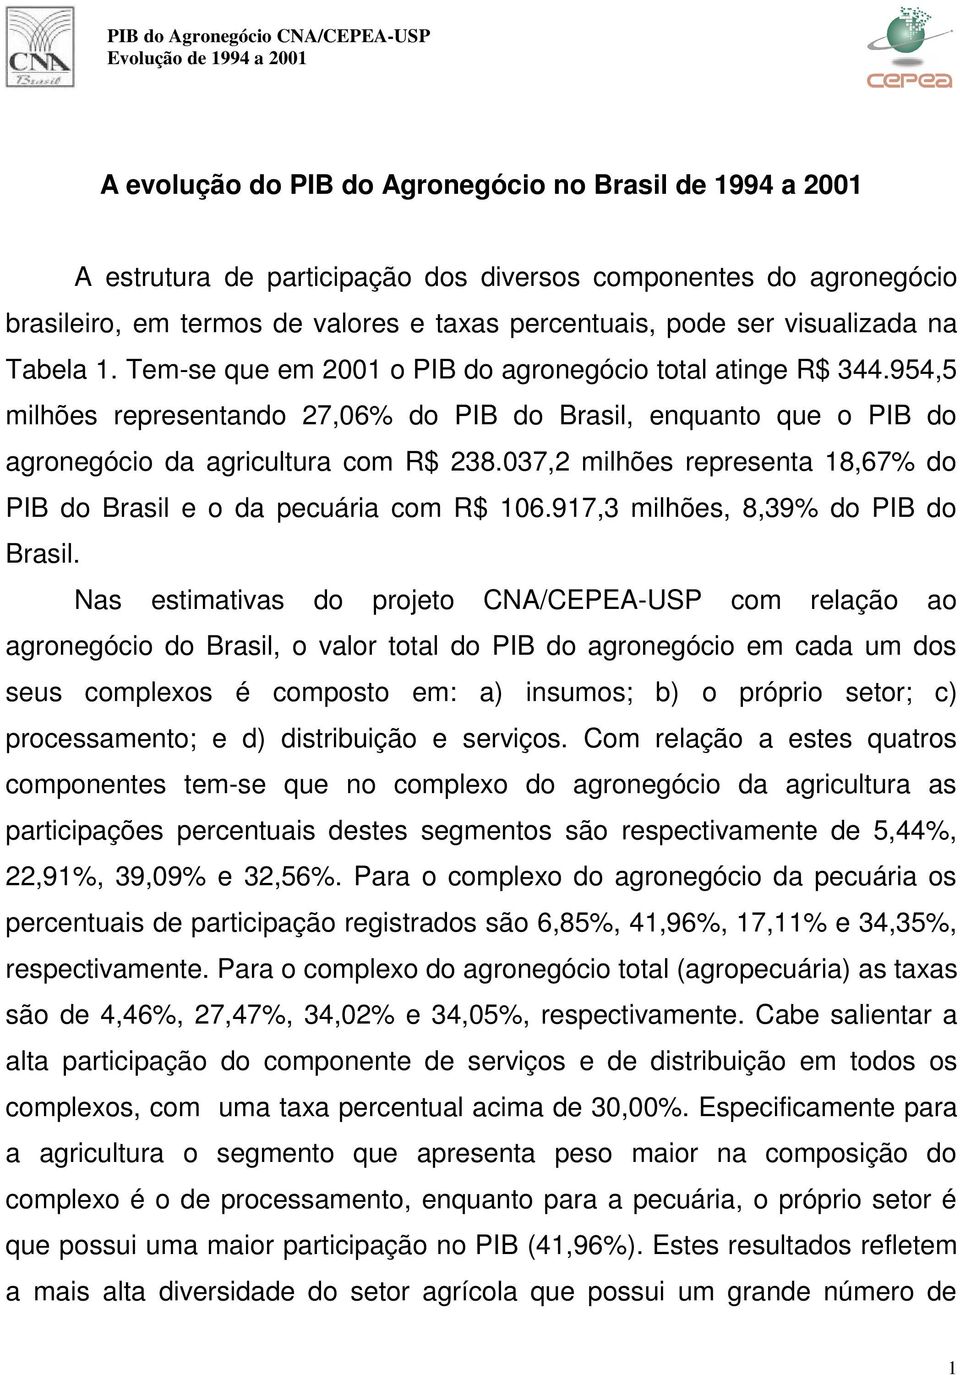 037,2 milhões representa 18,67% do PIB do Brasil e o da pecuária com R$ 106.917,3 milhões, 8,39% do PIB do Brasil.